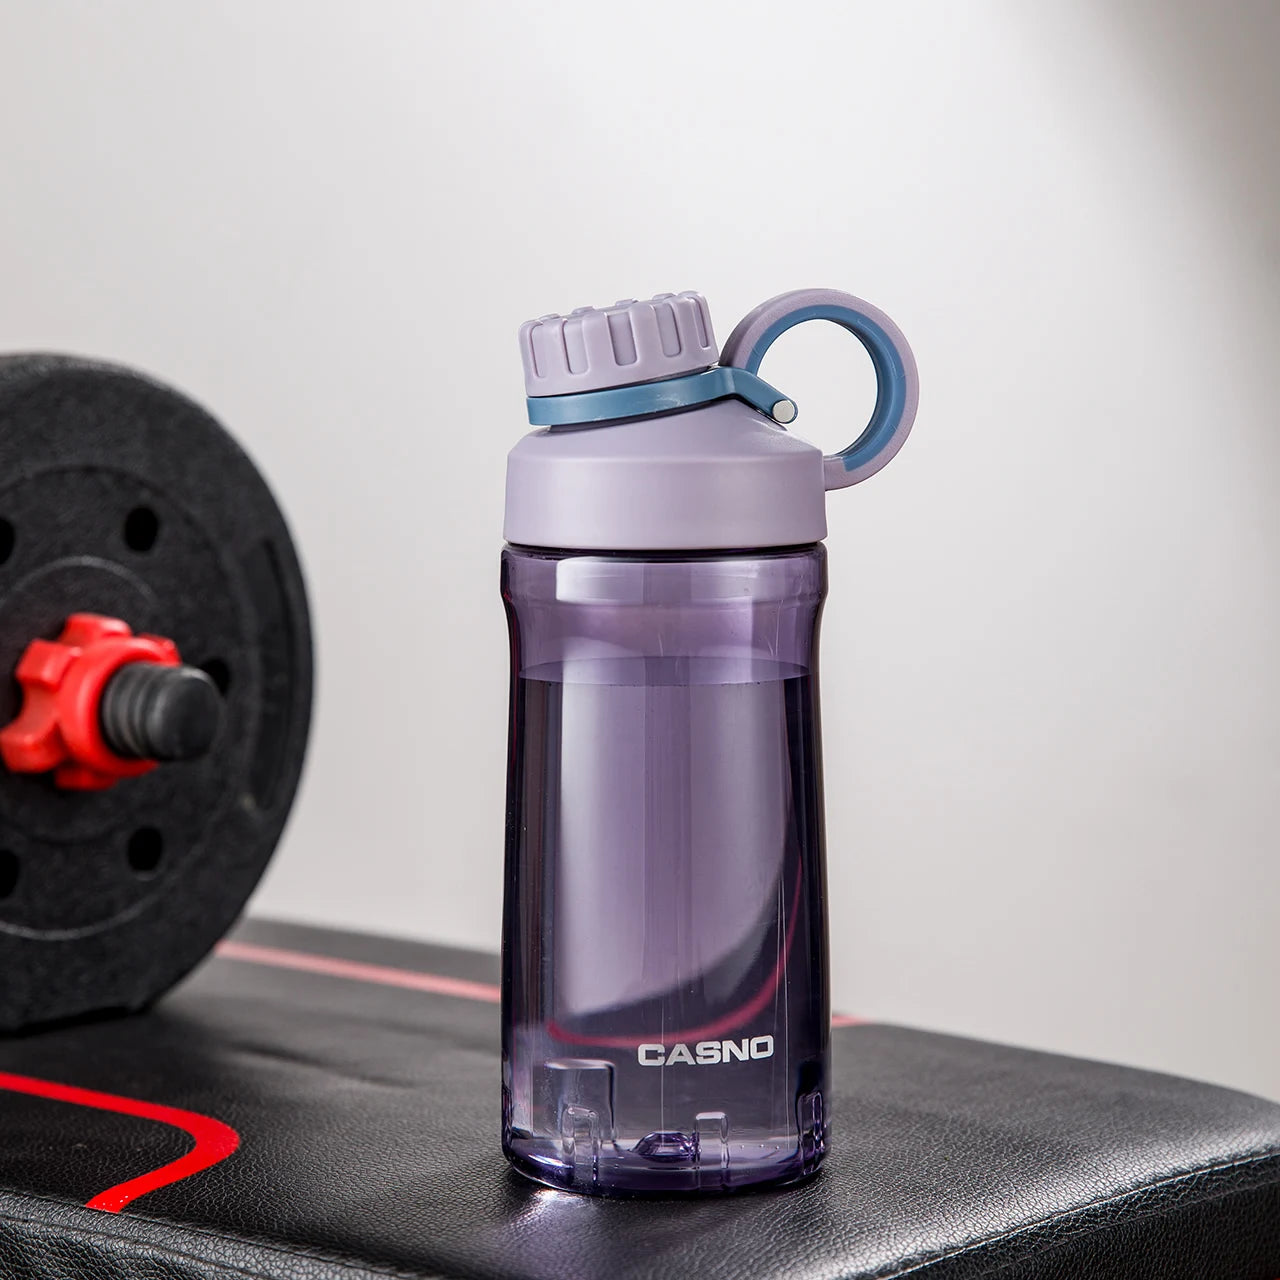 Eine violette, transparente Sporttrinkflasche auf einer Fitnessbank. Die Flasche hat einen schwarzen Schraubverschluss mit einem Henkel und ist mit dem Wort "SPORT" sowie der Marke "CASNO" beschriftet. Im Hintergrund ist eine Hantel mit roten Details zu sehen.